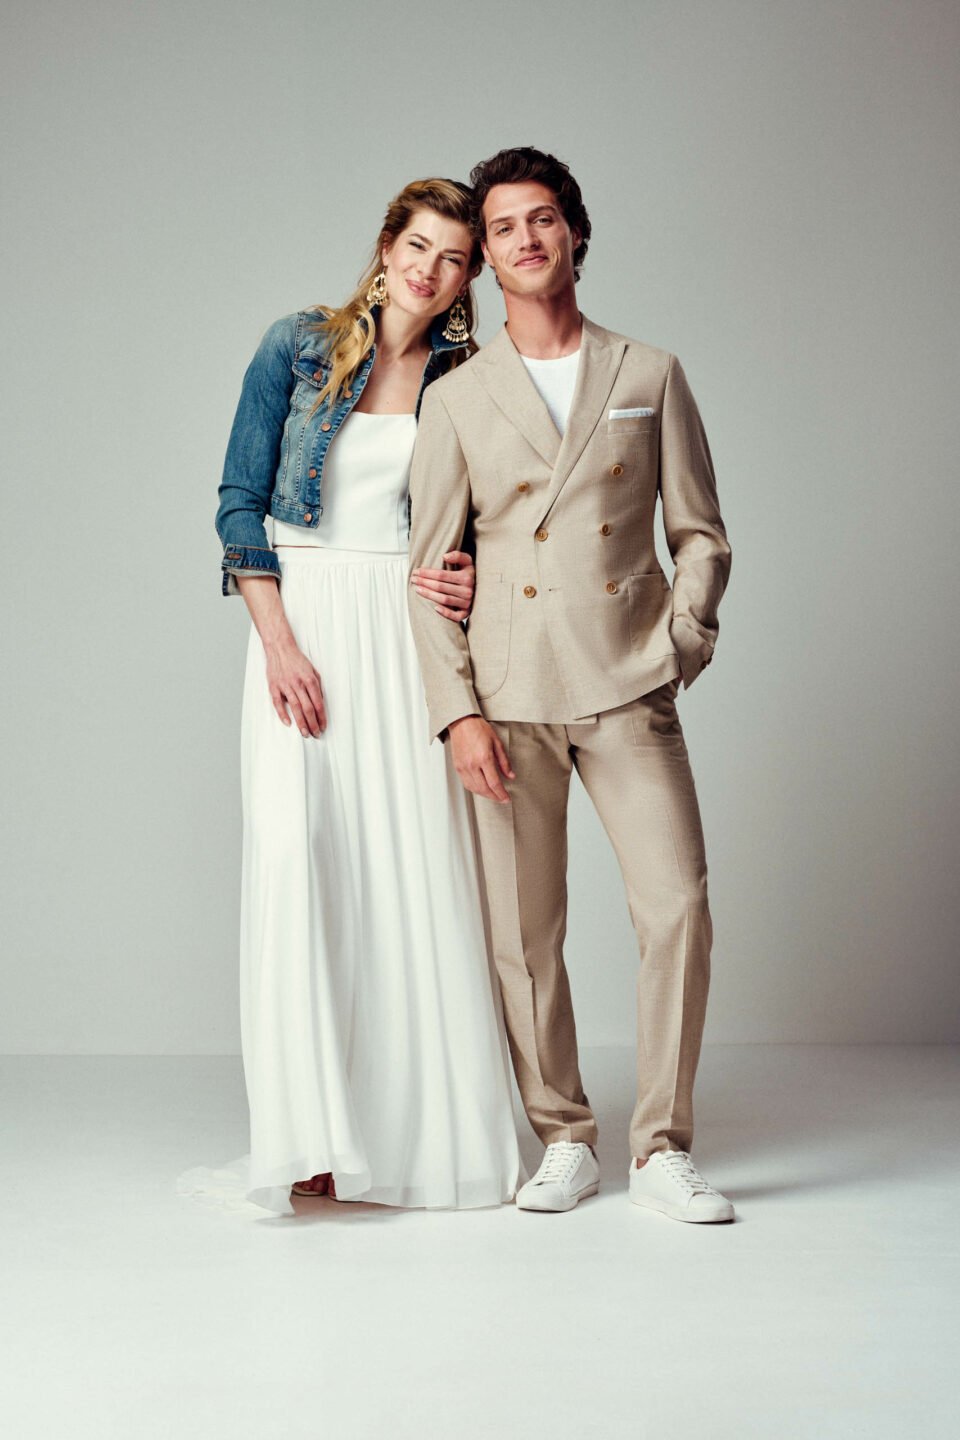 Cooles Brautpaar: Braut mit Jeansjacke im Zweiteiler, Bräutigam im lässigen, sandfarbenen Anzug